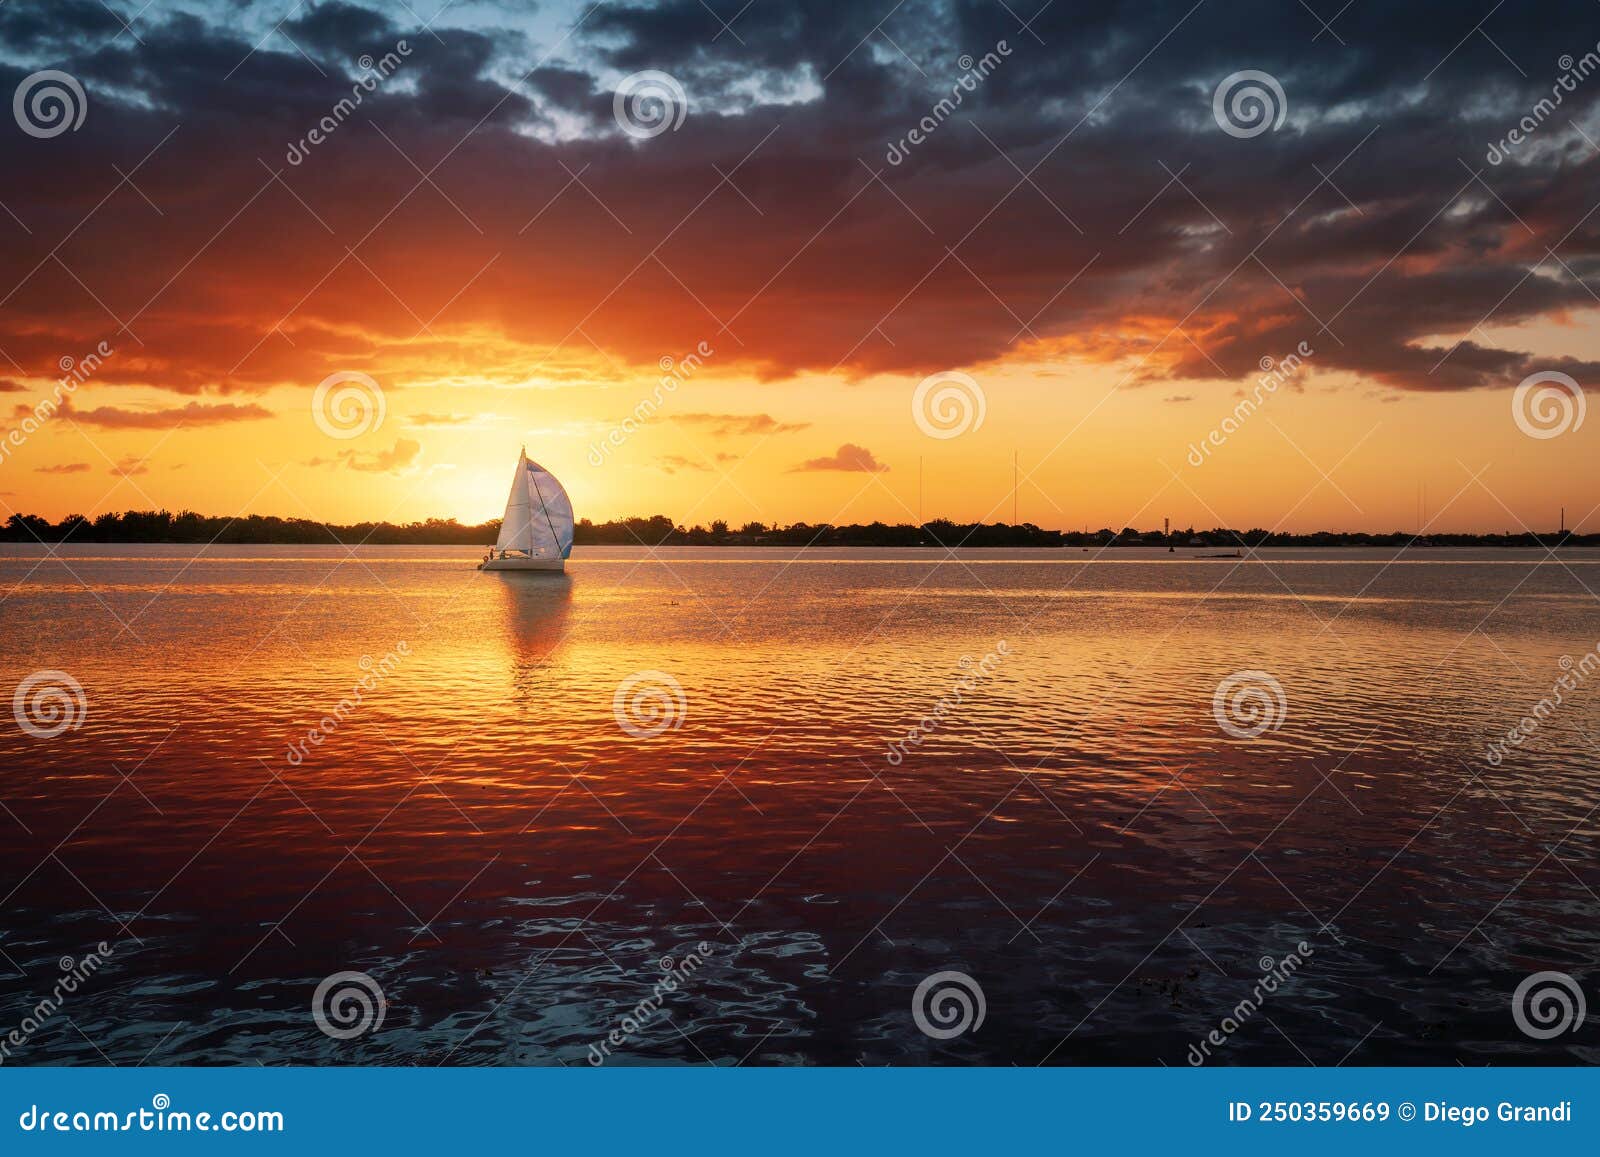 sunset at guaiba river with sail boat - porto alegre, rio grande do sul, brazil